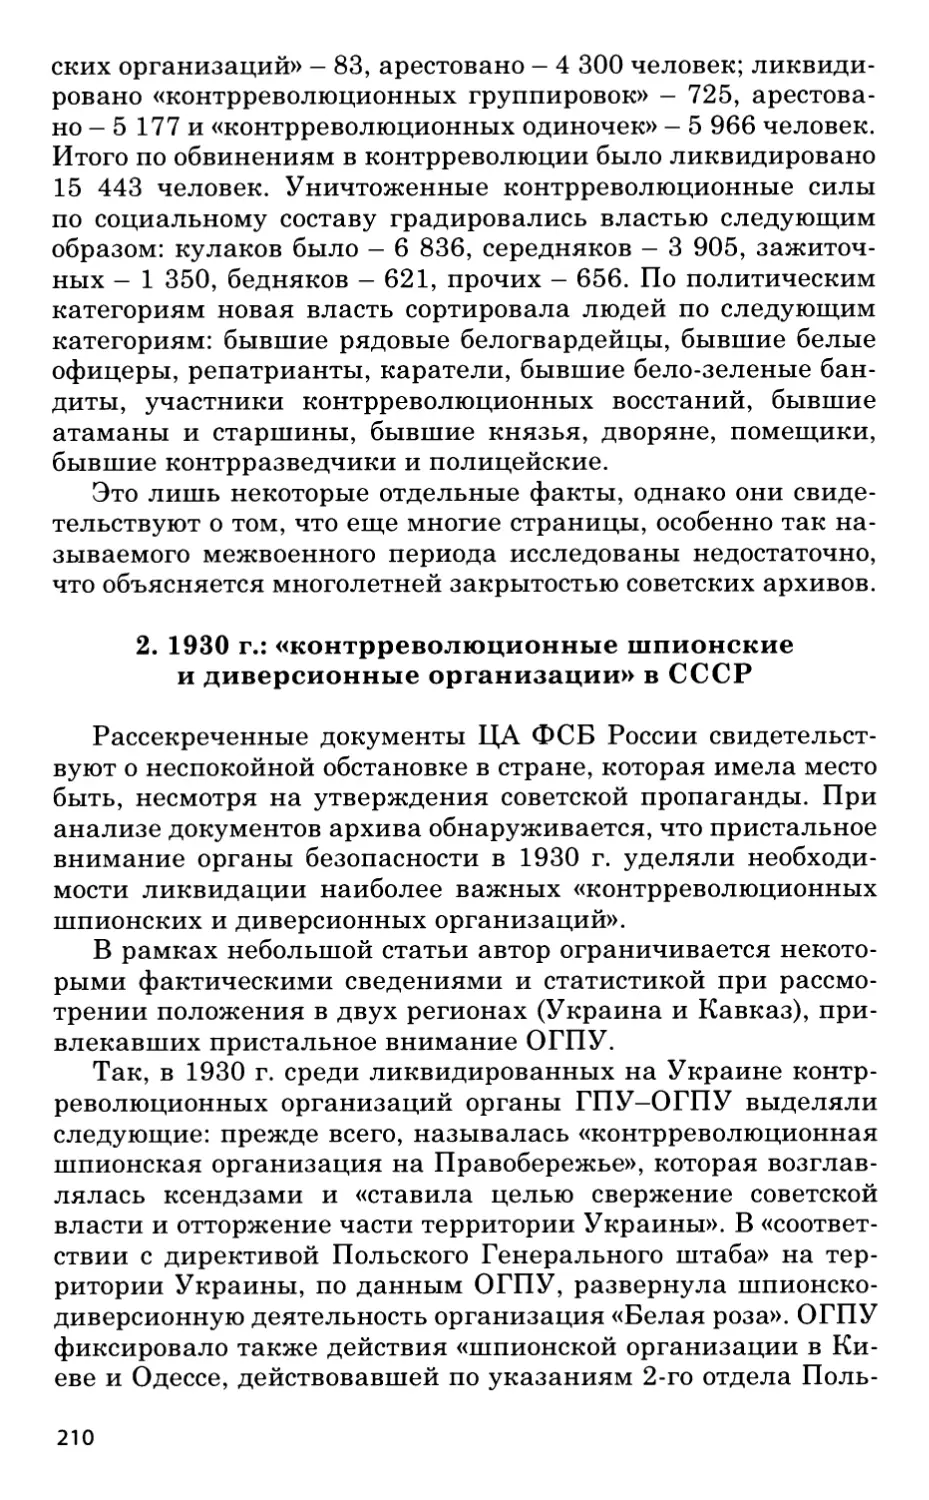 2. 1930-й год: «контрреволюционные шпионские и диверсионные организации» в СССР